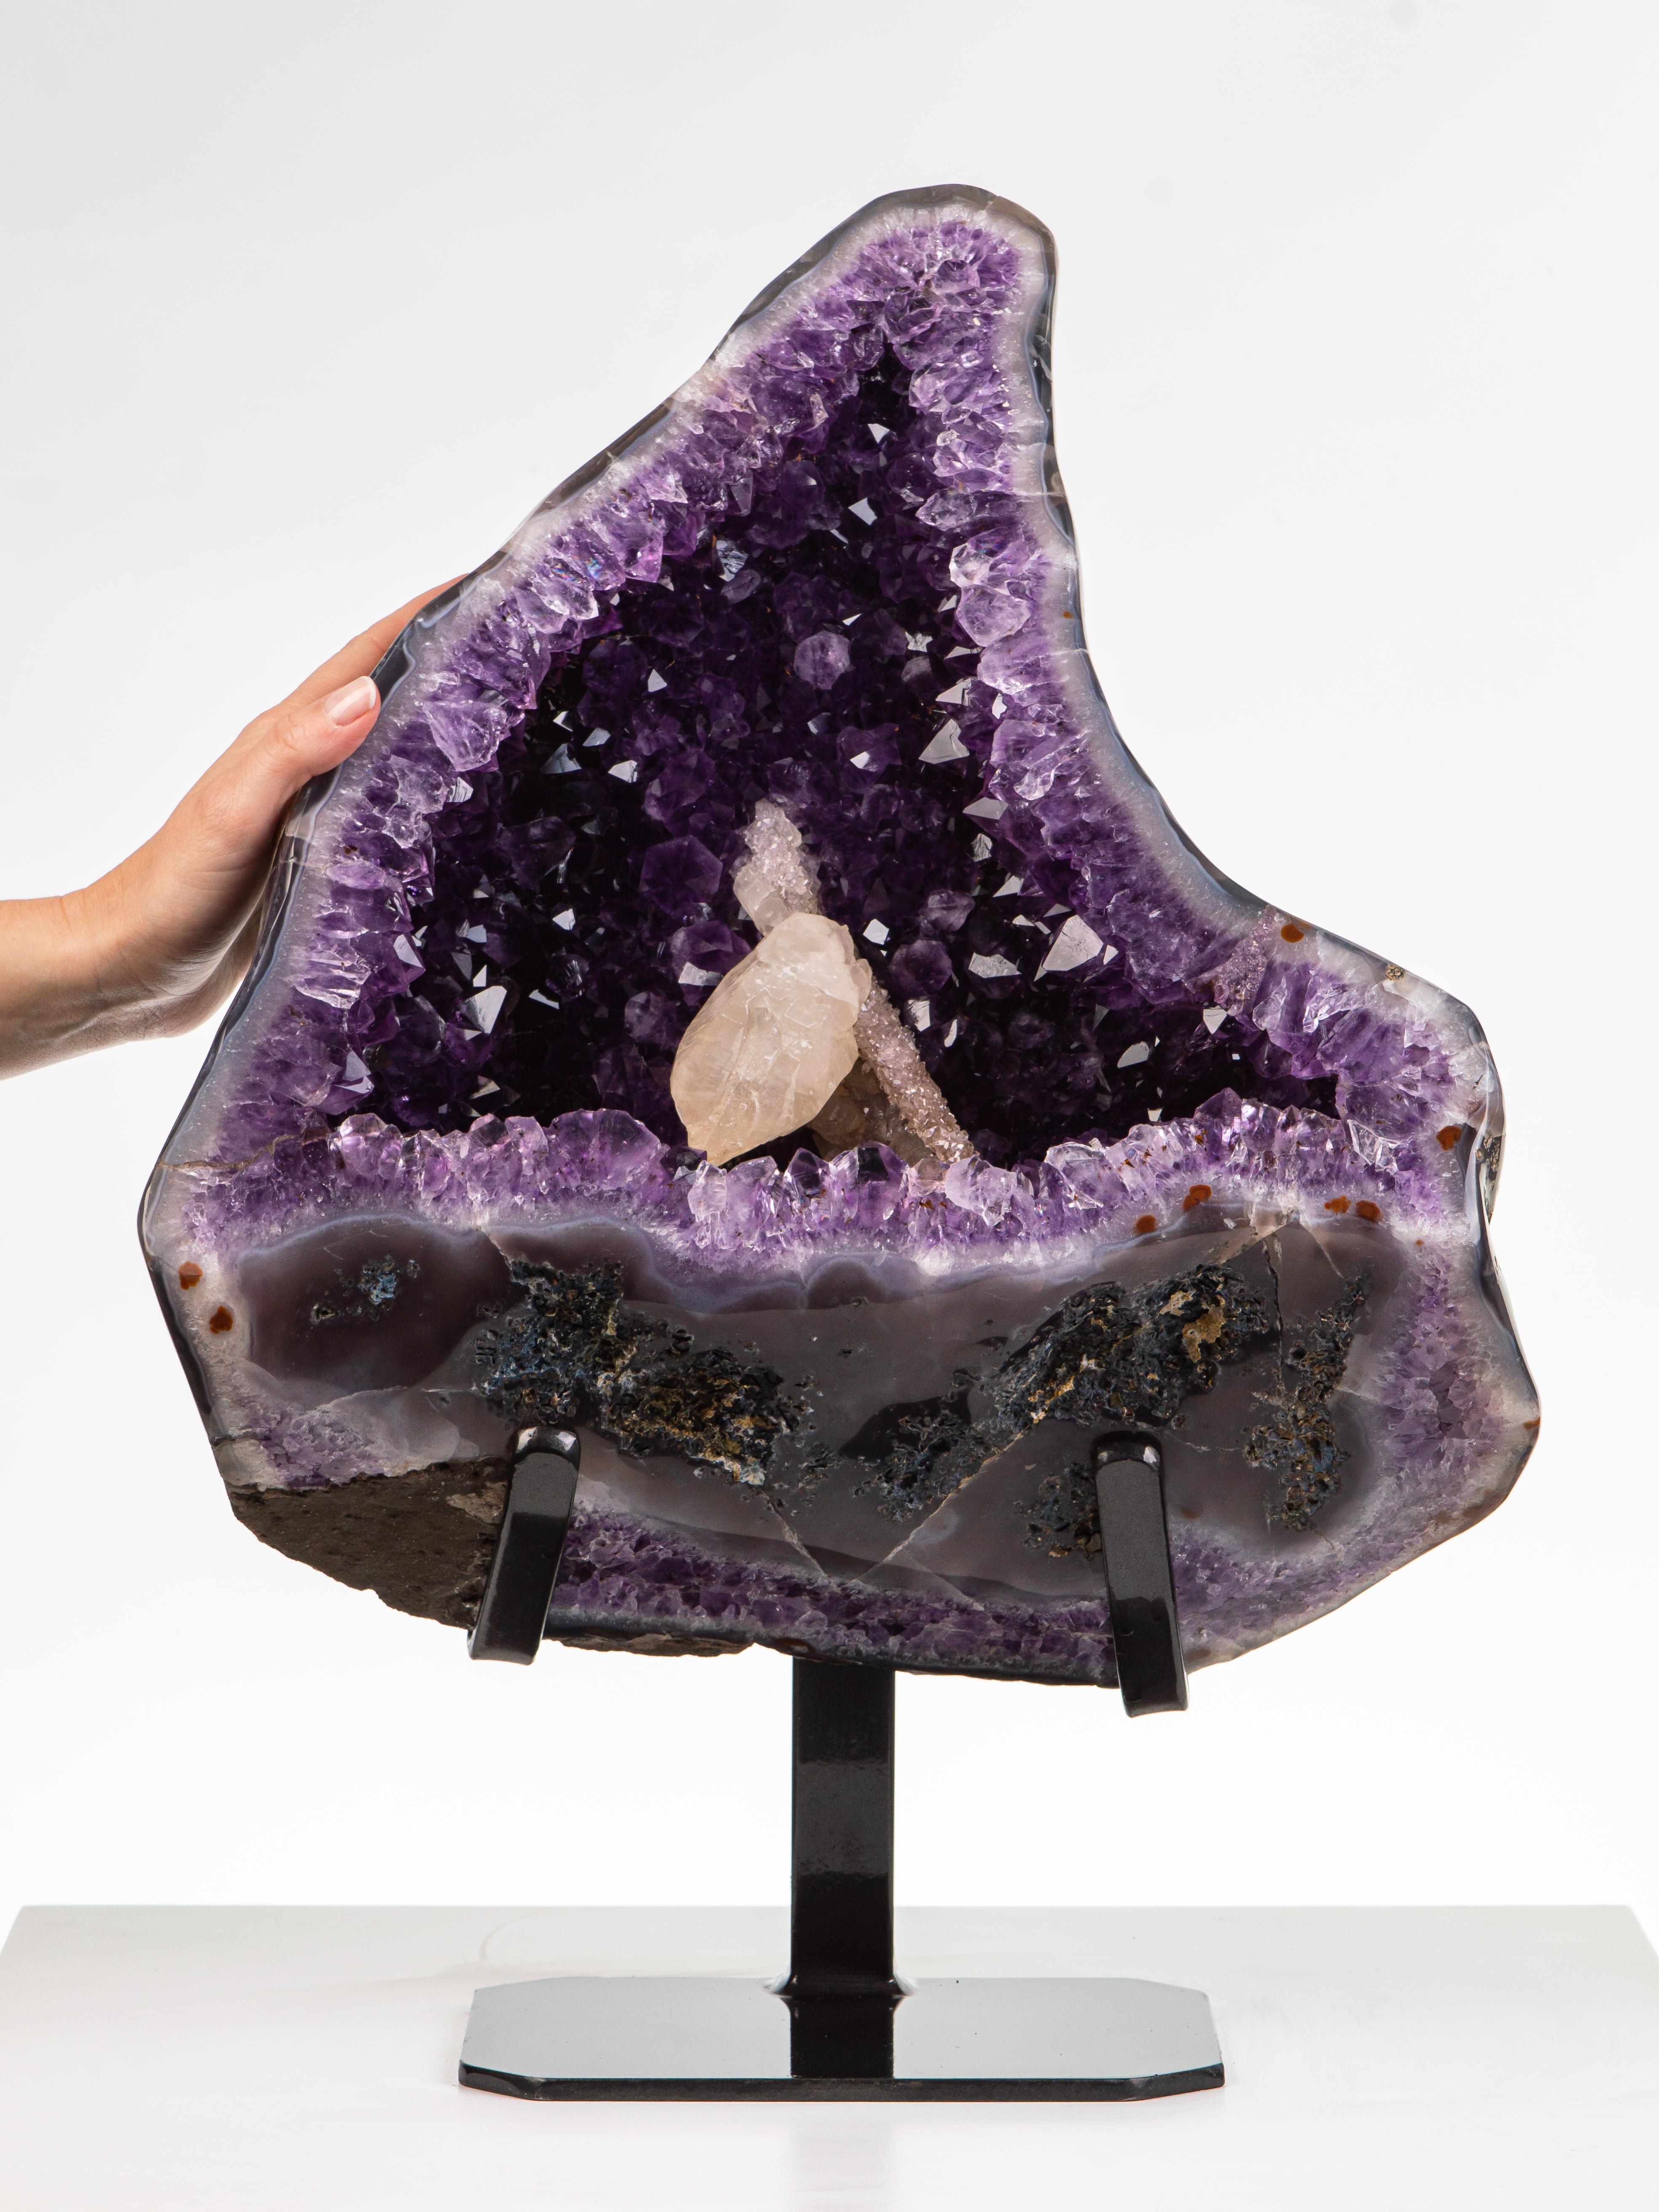 Eine halbpolierte Geode mit einem dicken agatierten Rand. Das Innere ist mit tiefvioletten Amethystkristallen und 2 schönen Kalzitformationen in der Mitte bedeckt, von denen eine mit einer Decke aus Drusus überzogen ist.

Dieses Stück wurde legal